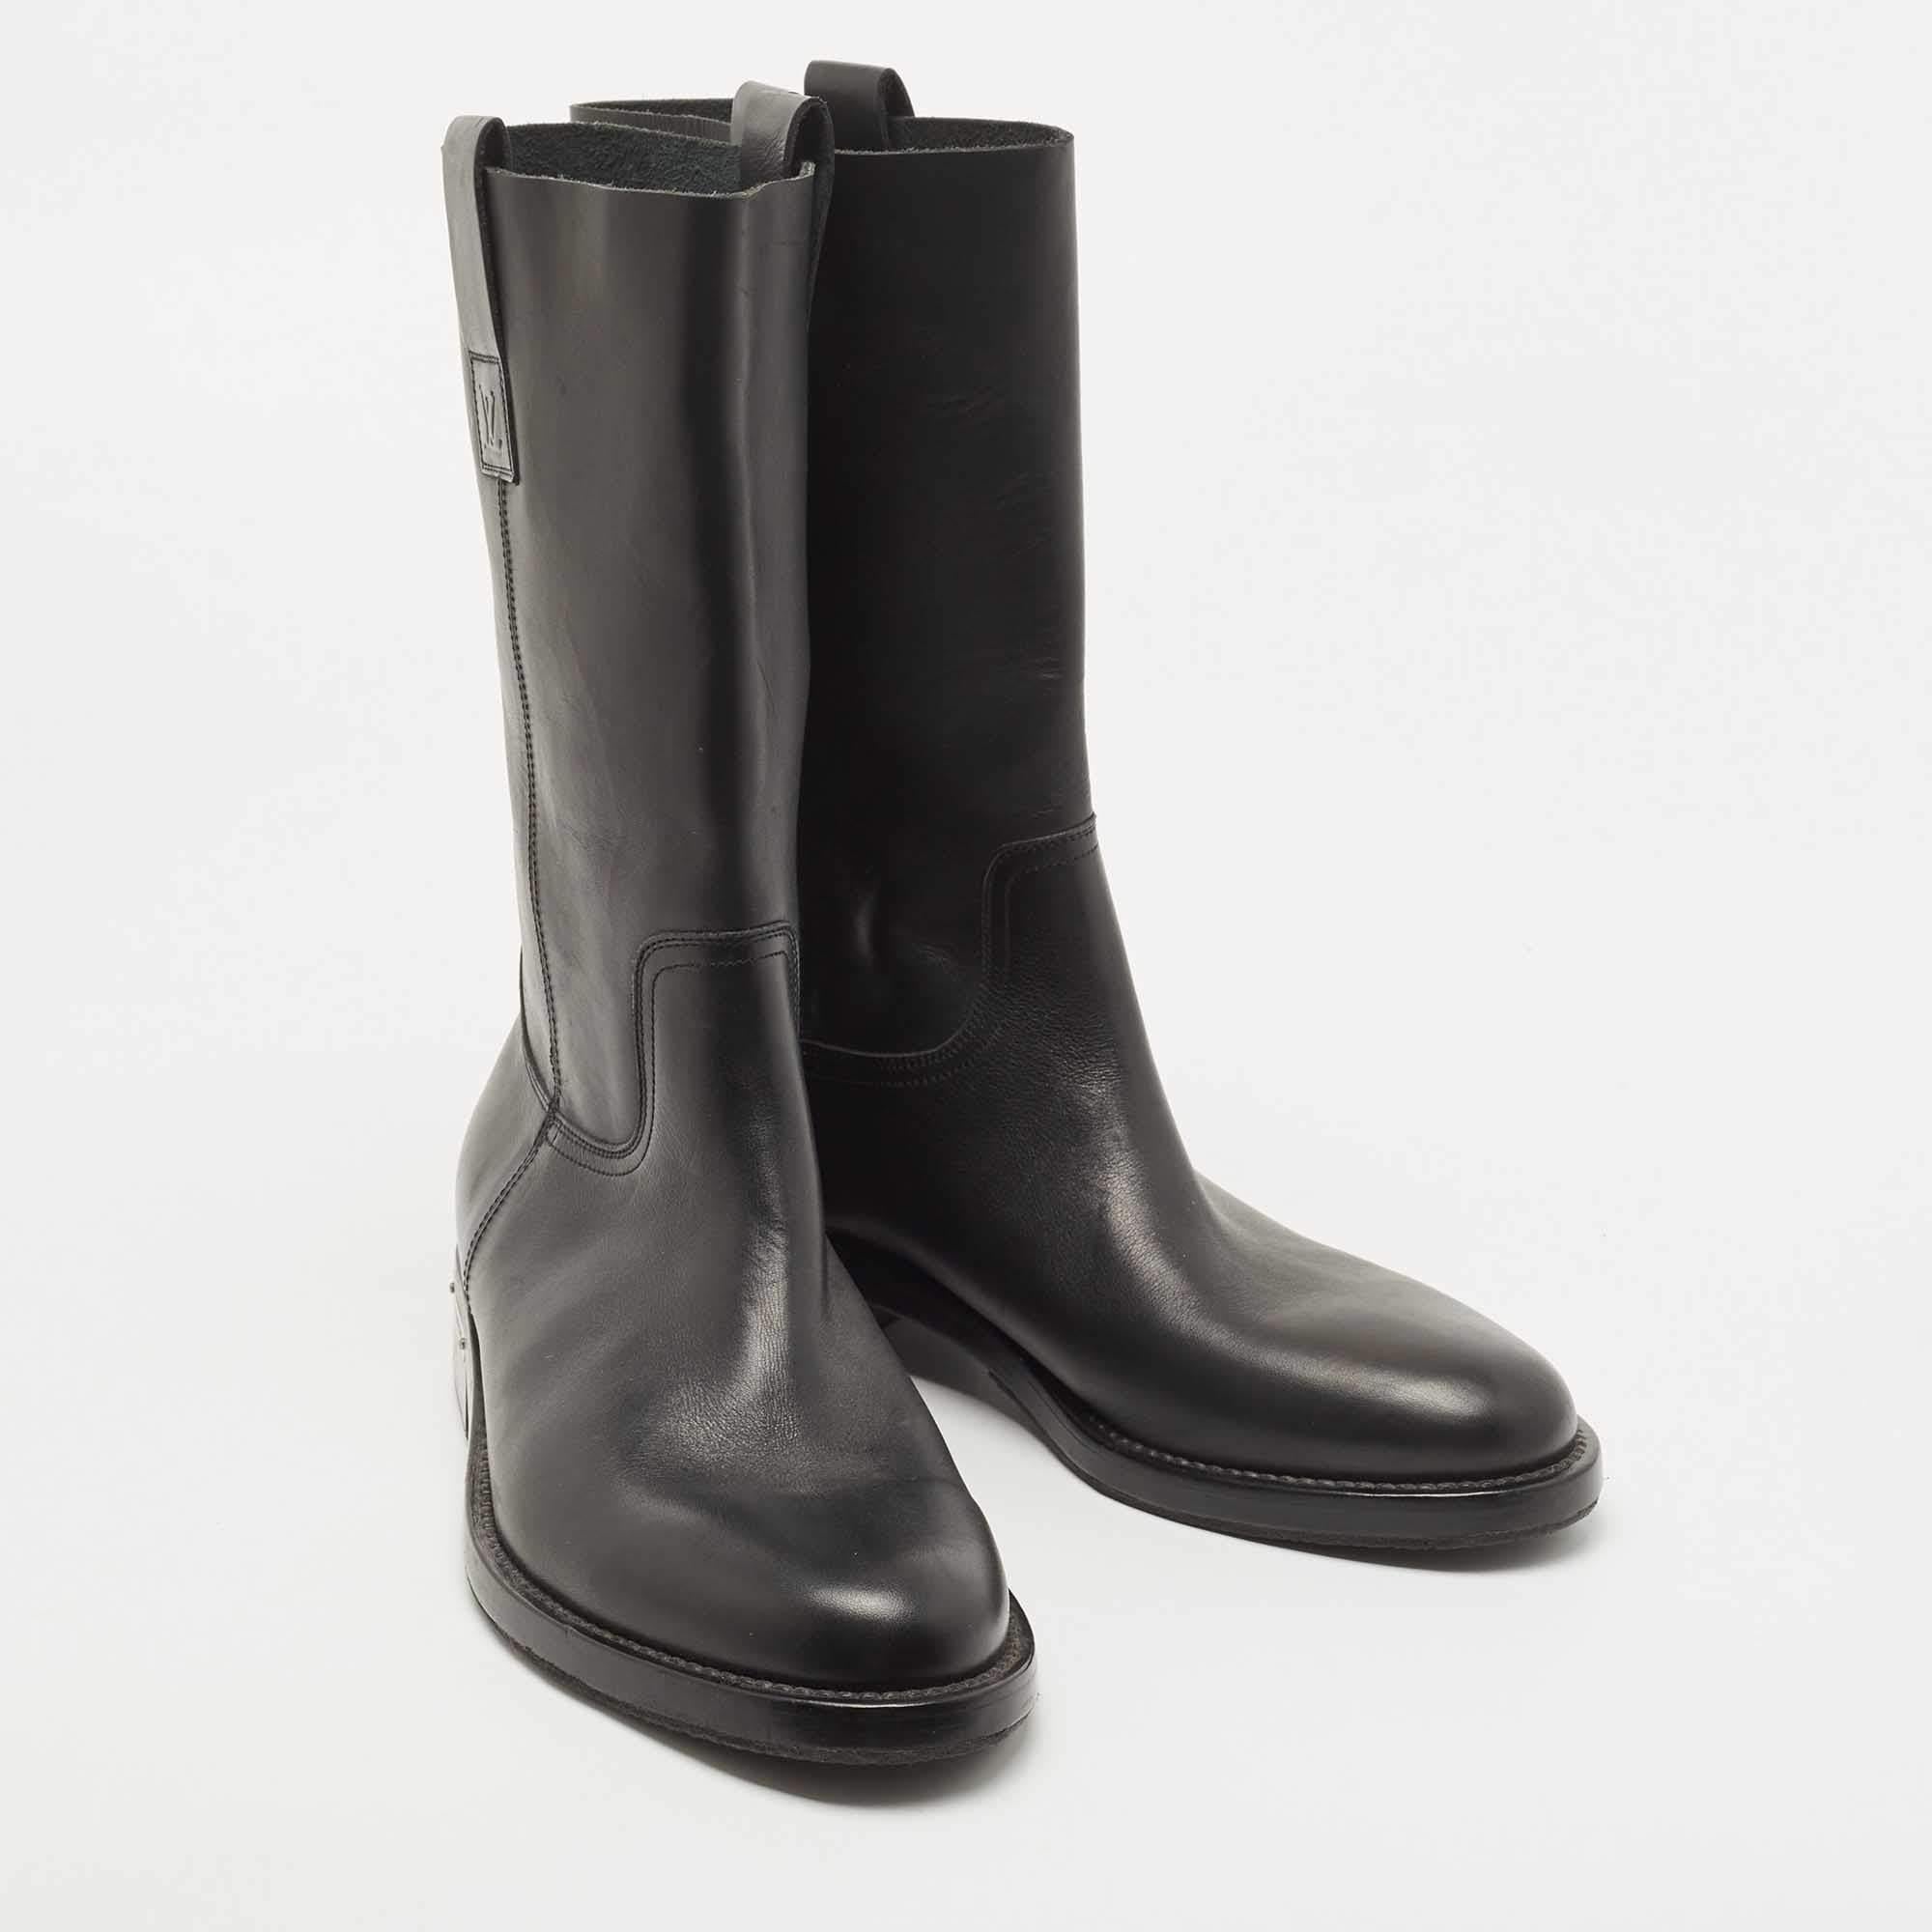 Men's Louis Vuitton Black Leather Calf Length Boots Size 42